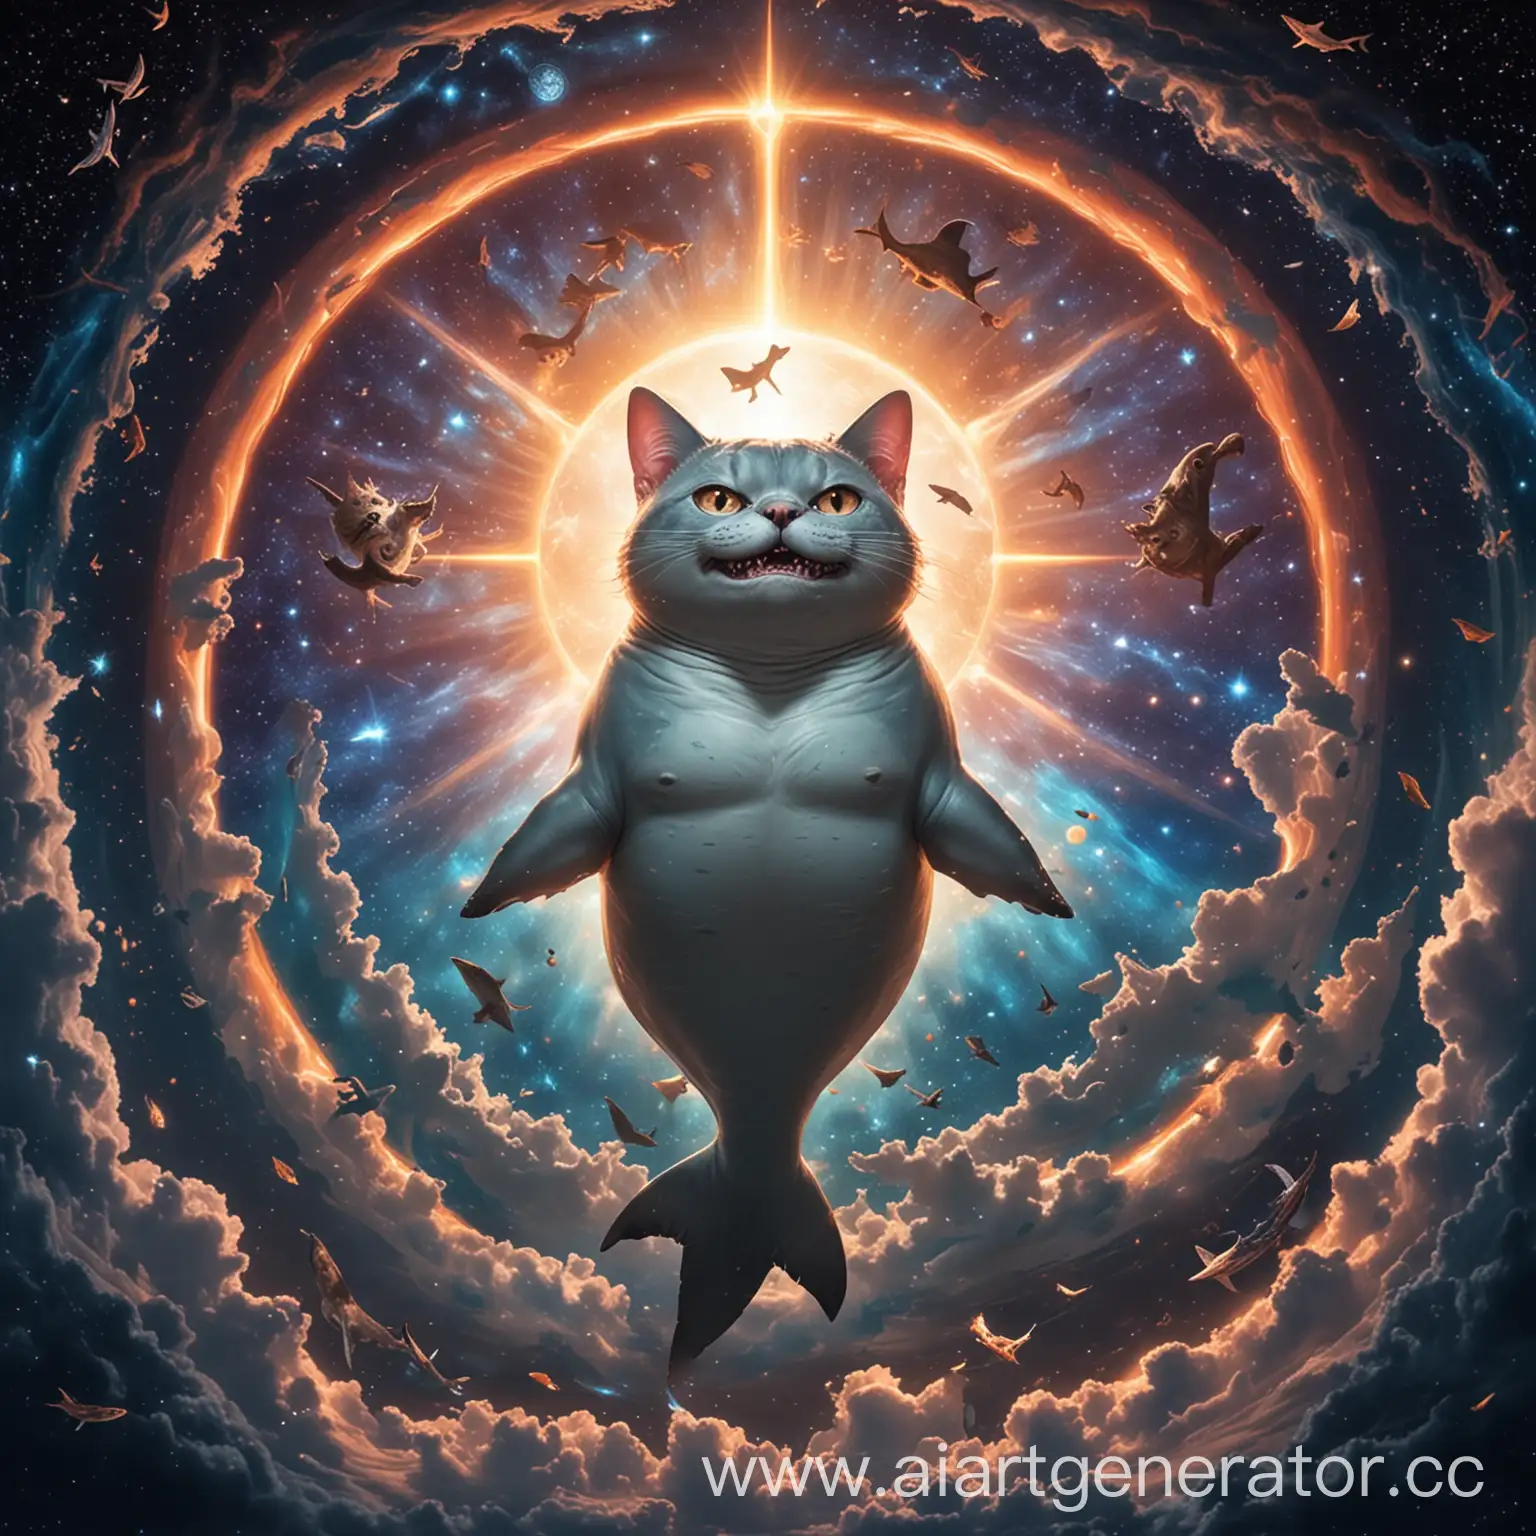 Celestial-Shark-Deity-with-Cat-Head-in-Eternal-Cosmos